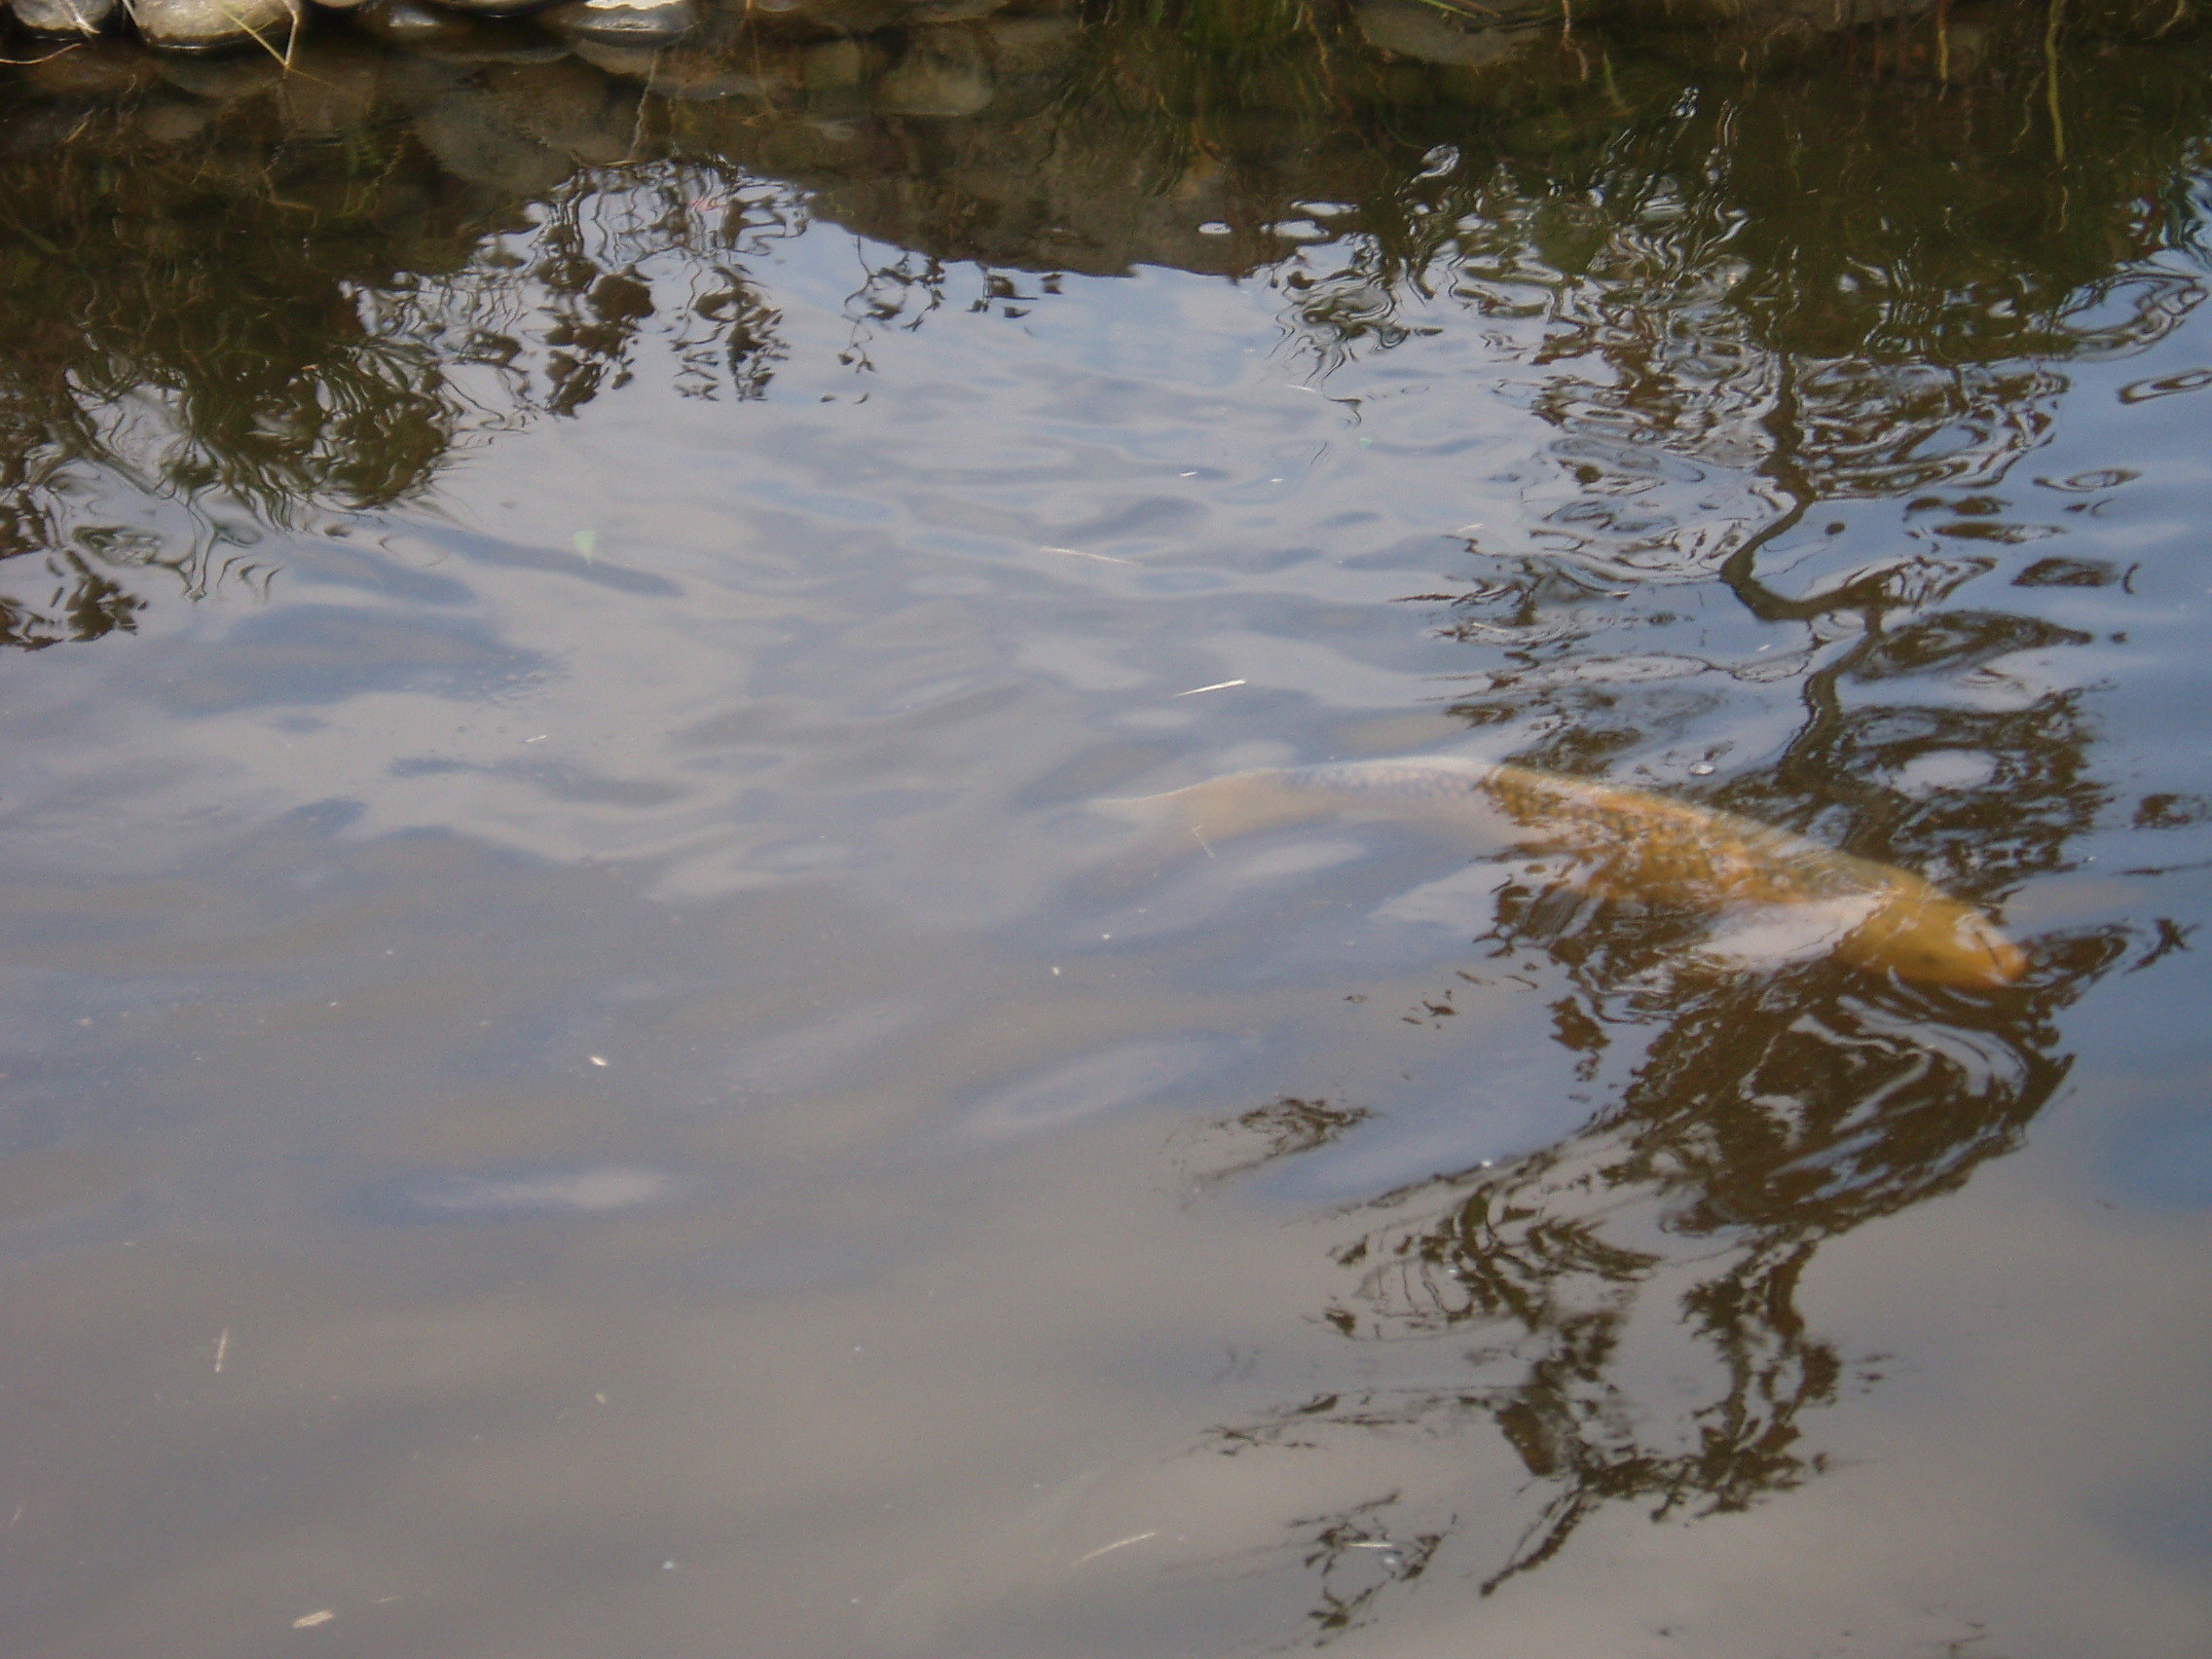 こぶな村の池で泳ぐ鯉の写真